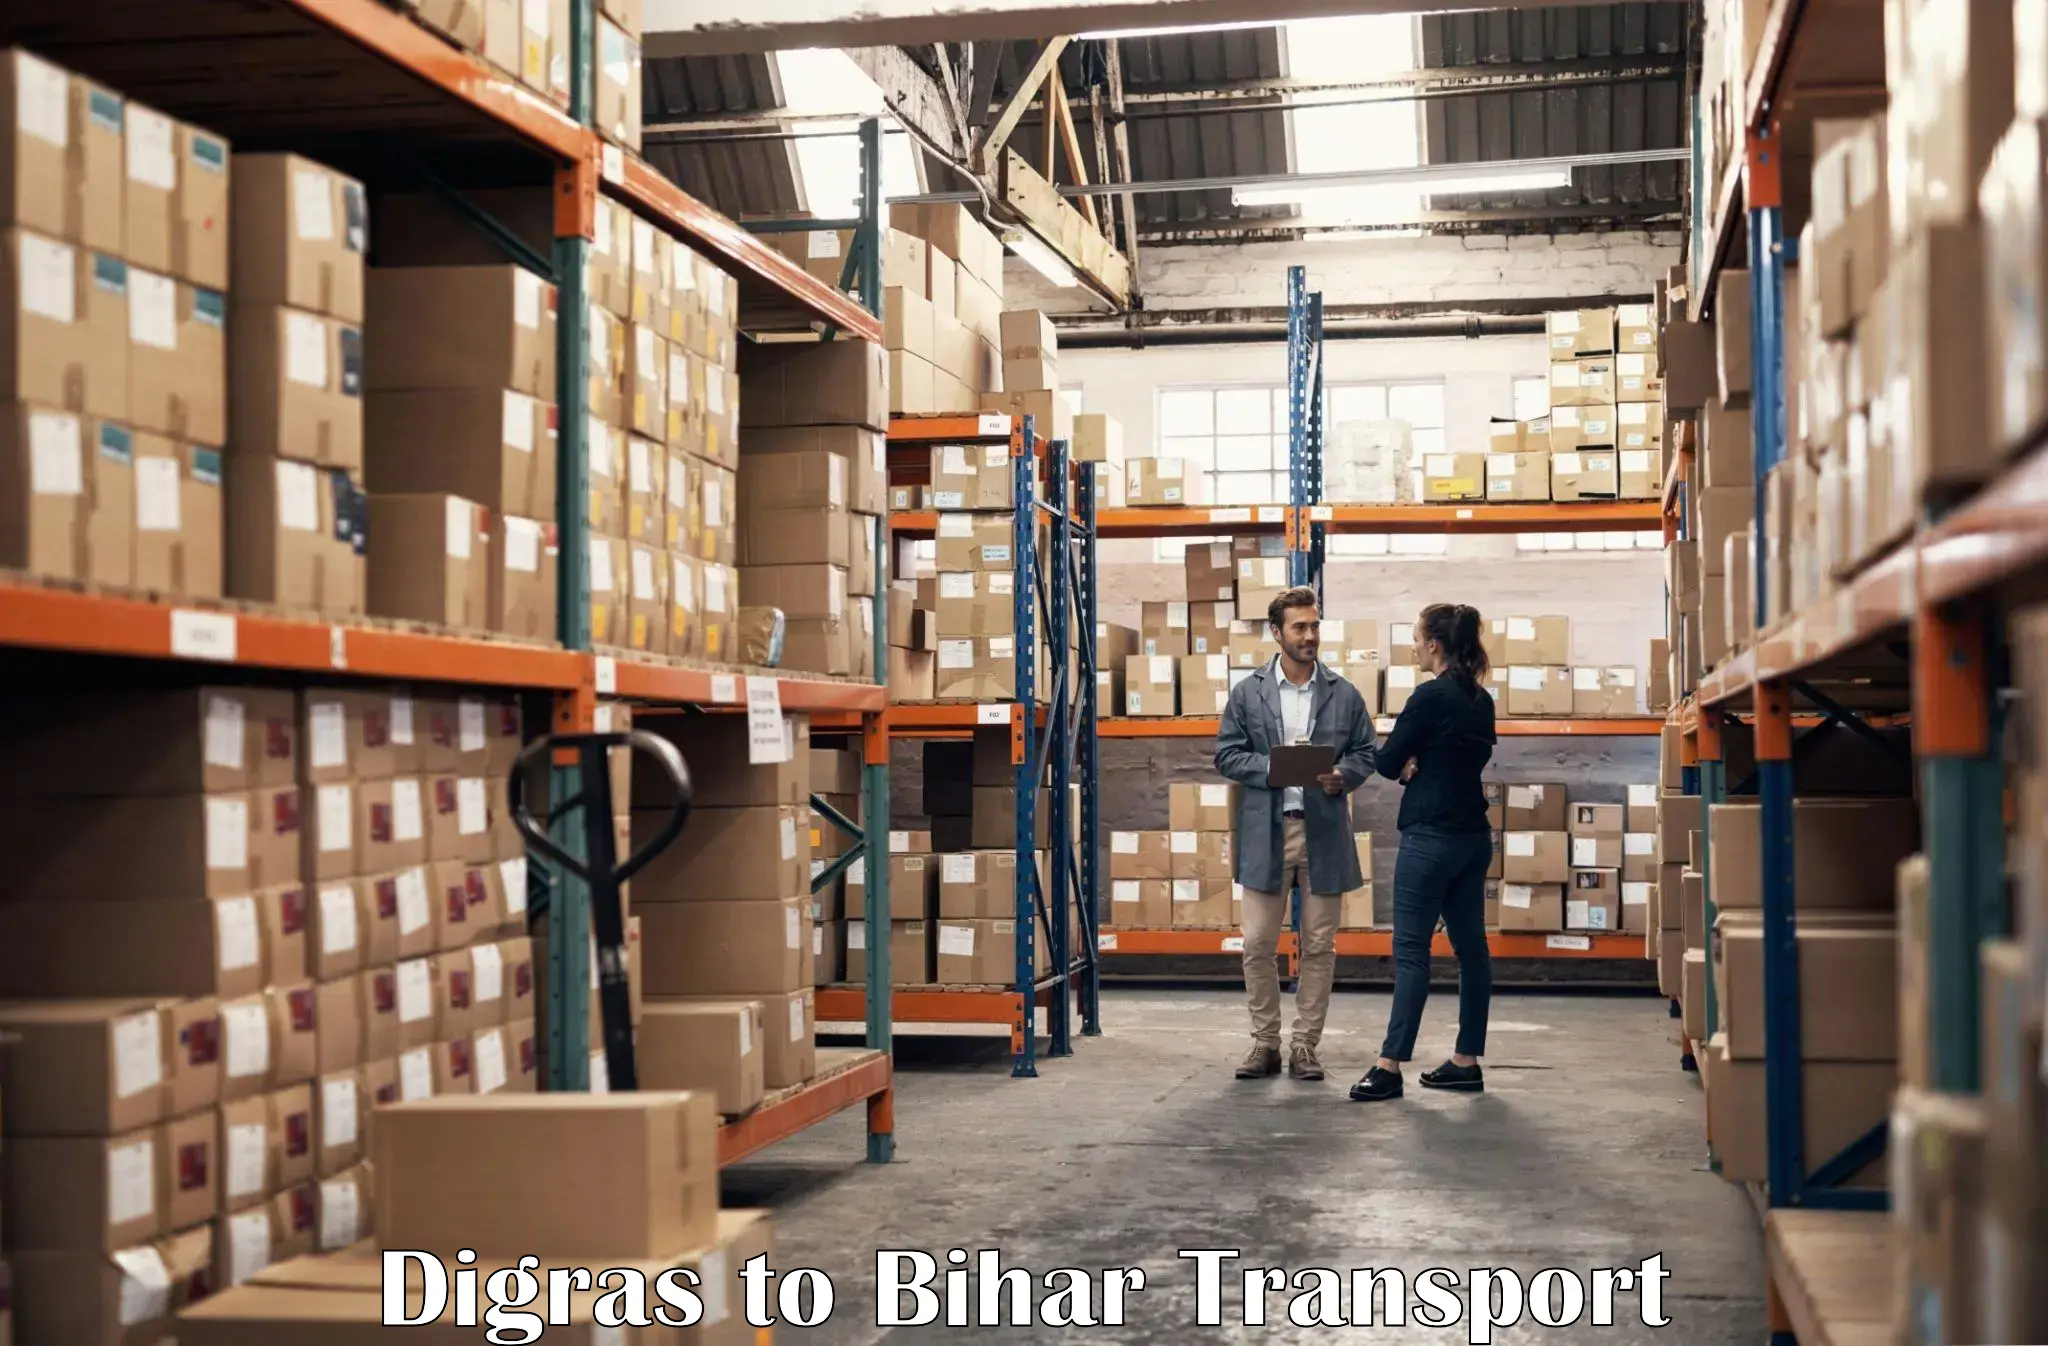 Furniture transport service Digras to Dinara